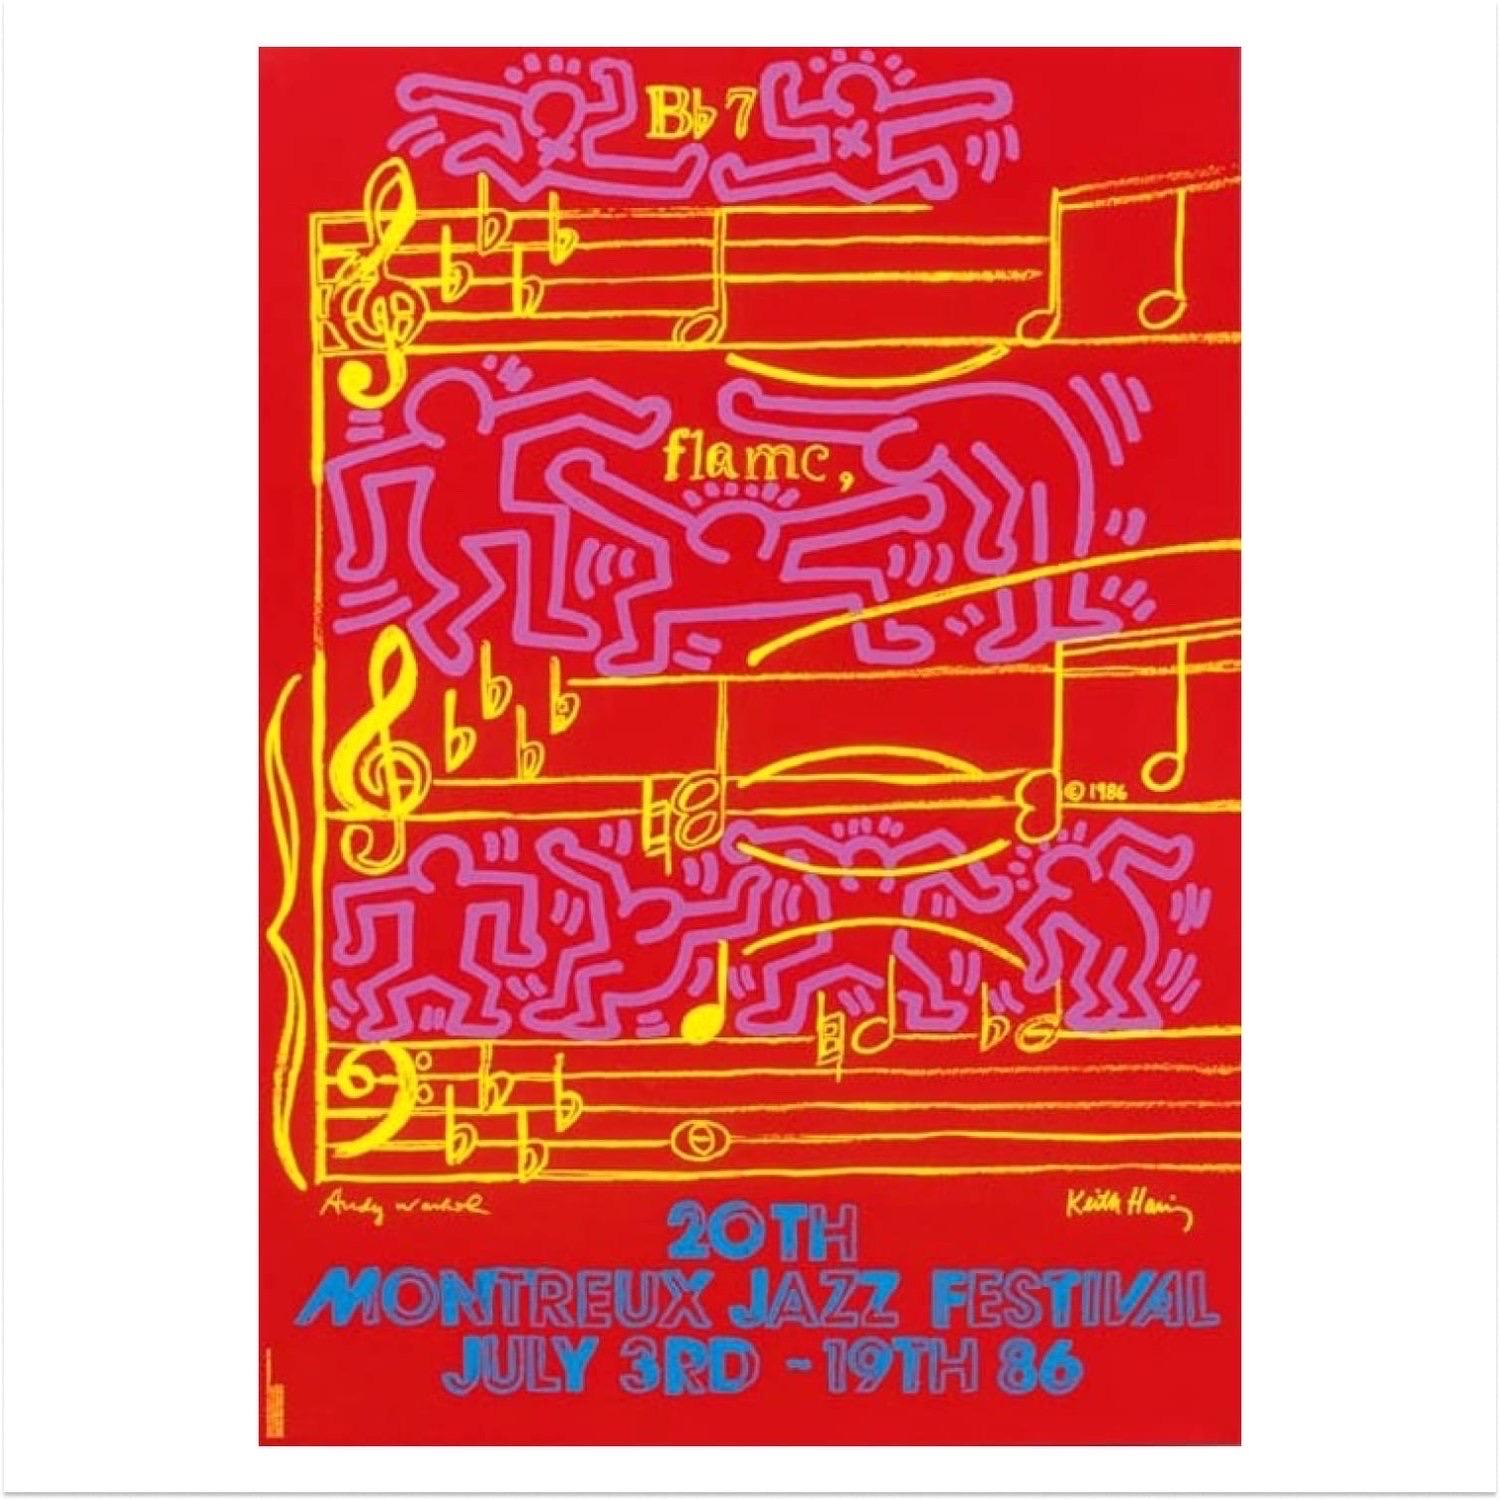 Das Montreux Jazz Festival von Keith Haring und Andy Warhol, 1986